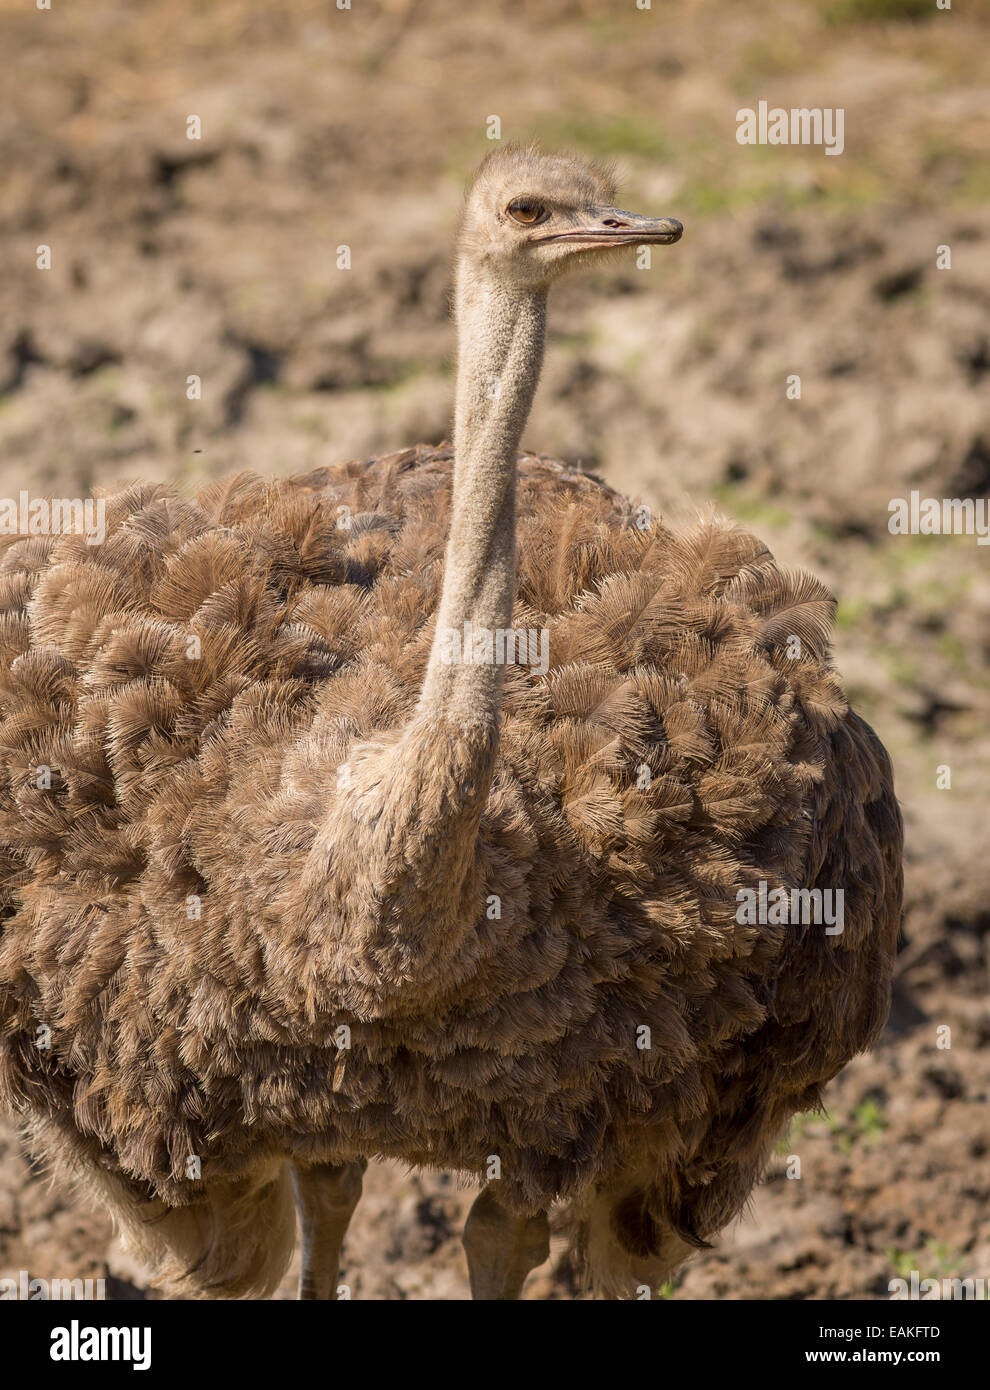 Krüger-Nationalpark, Südafrika - gemeinsame Strauß, großen flugunfähigen Vogel, Struthio Camelus. Stockfoto